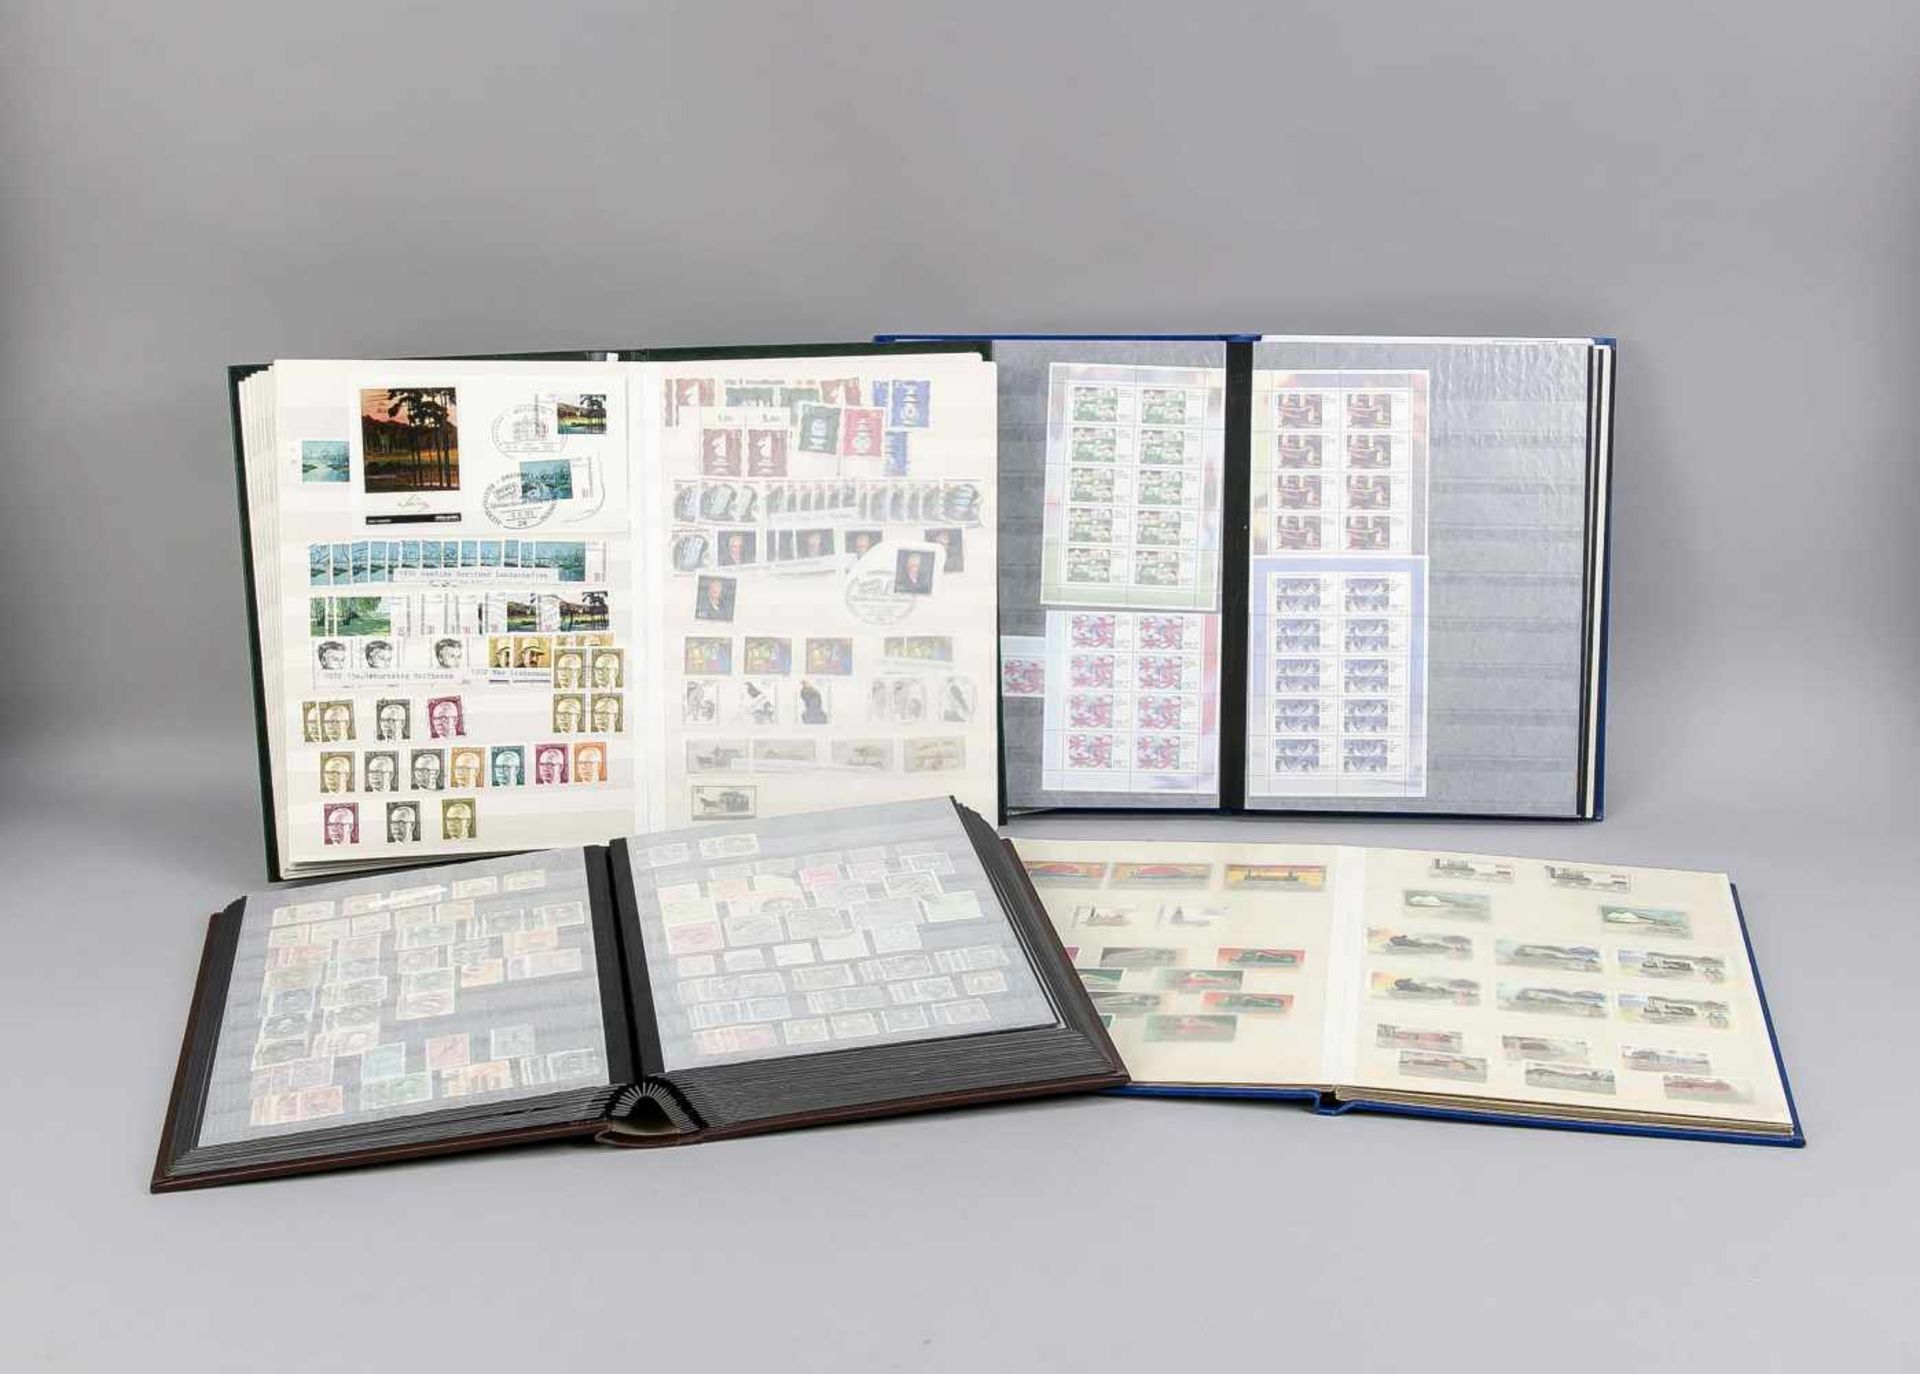 Große Kiste voll mit Briefmarkenalben, alle bestückt und in gepflegtem Zustand,ungesichtet, Kiste